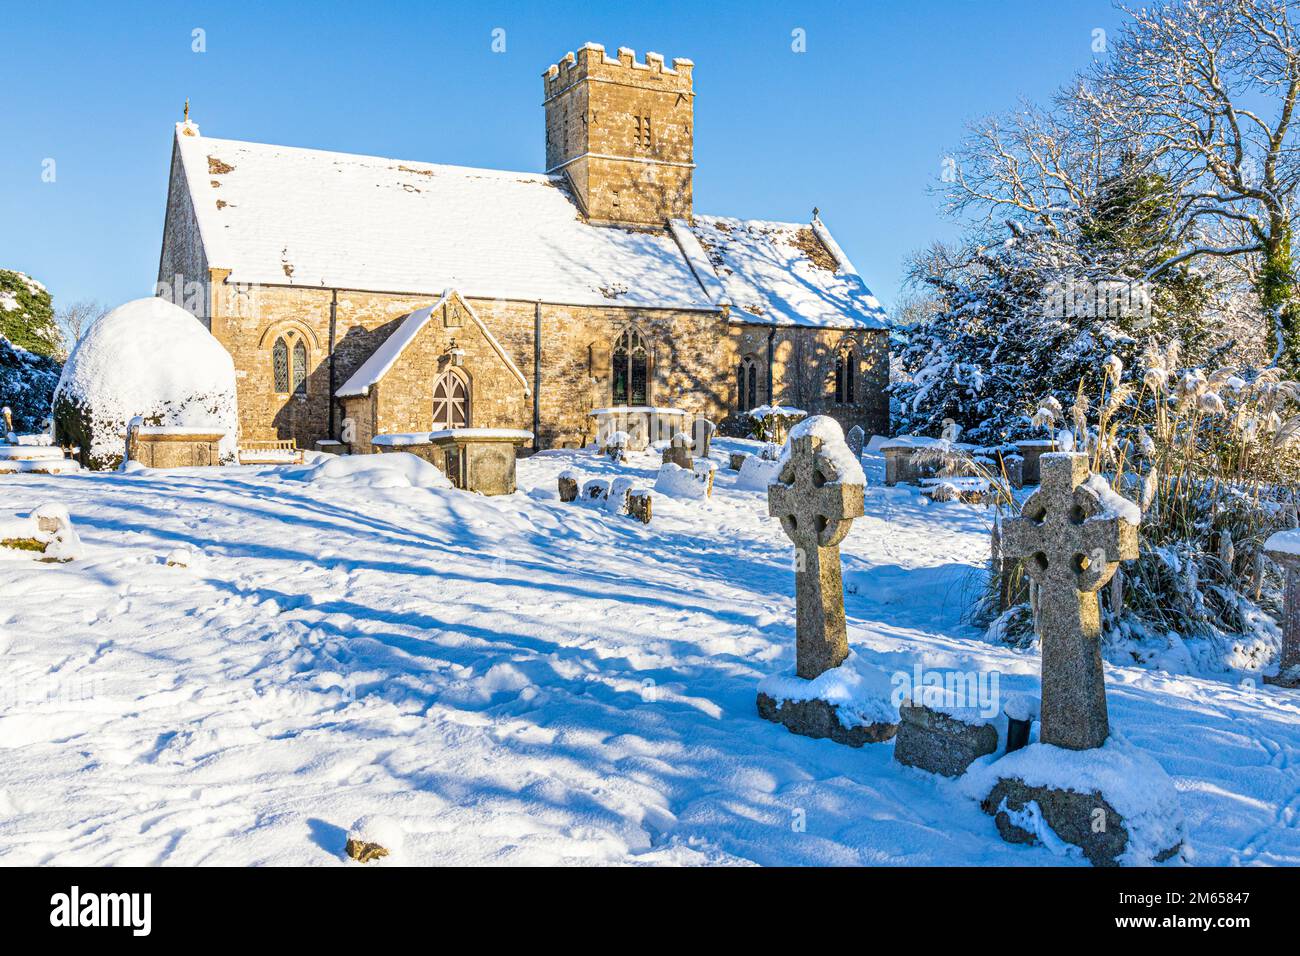 Neige au début de l'hiver à l'église St Michael & All Angels datant du 12th siècle, dans le village de Brimpsfield, Gloucestershire, Angleterre Banque D'Images